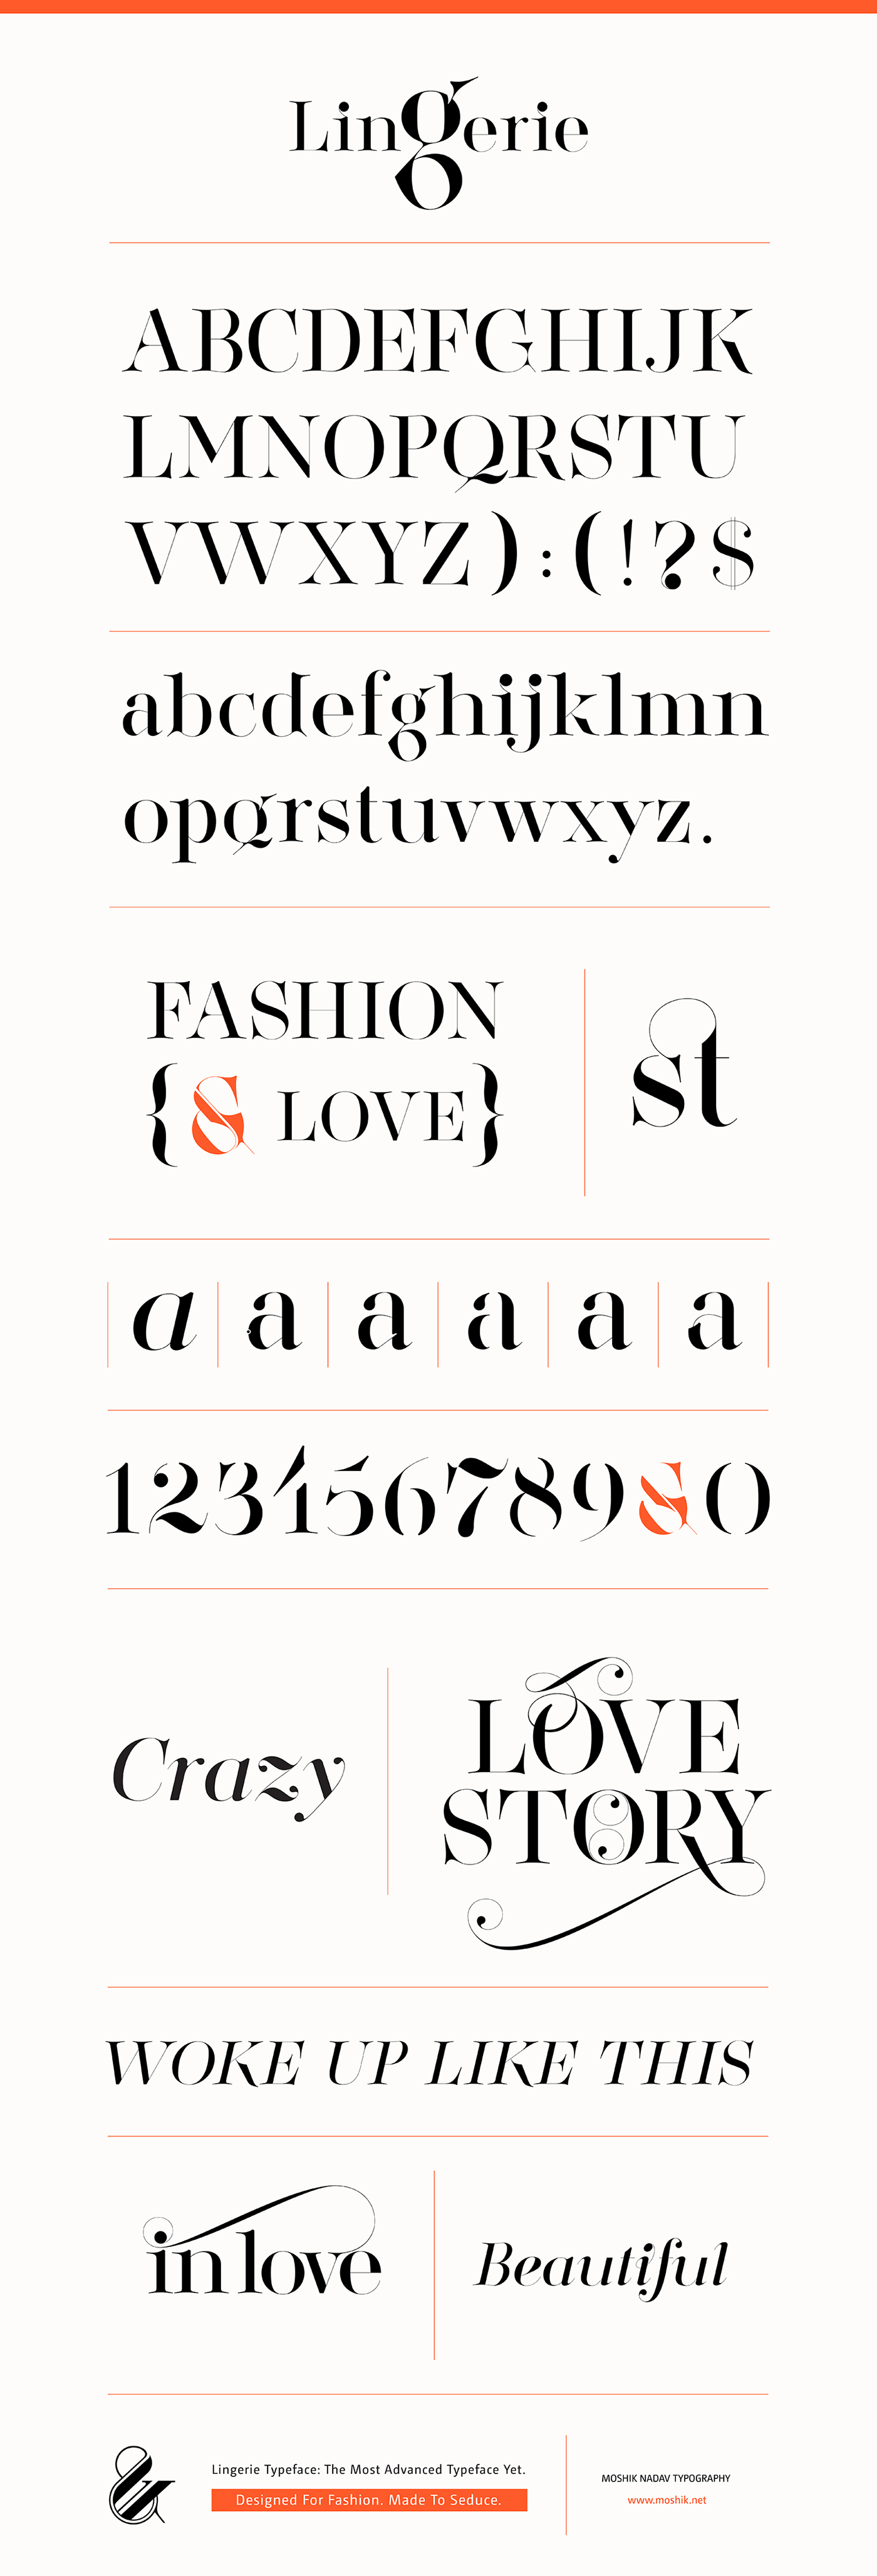 Typeface fonts font nyc type sexy Swashes ligature Fashion typography fashion magazine lingerie typeface New York logo logos typographer